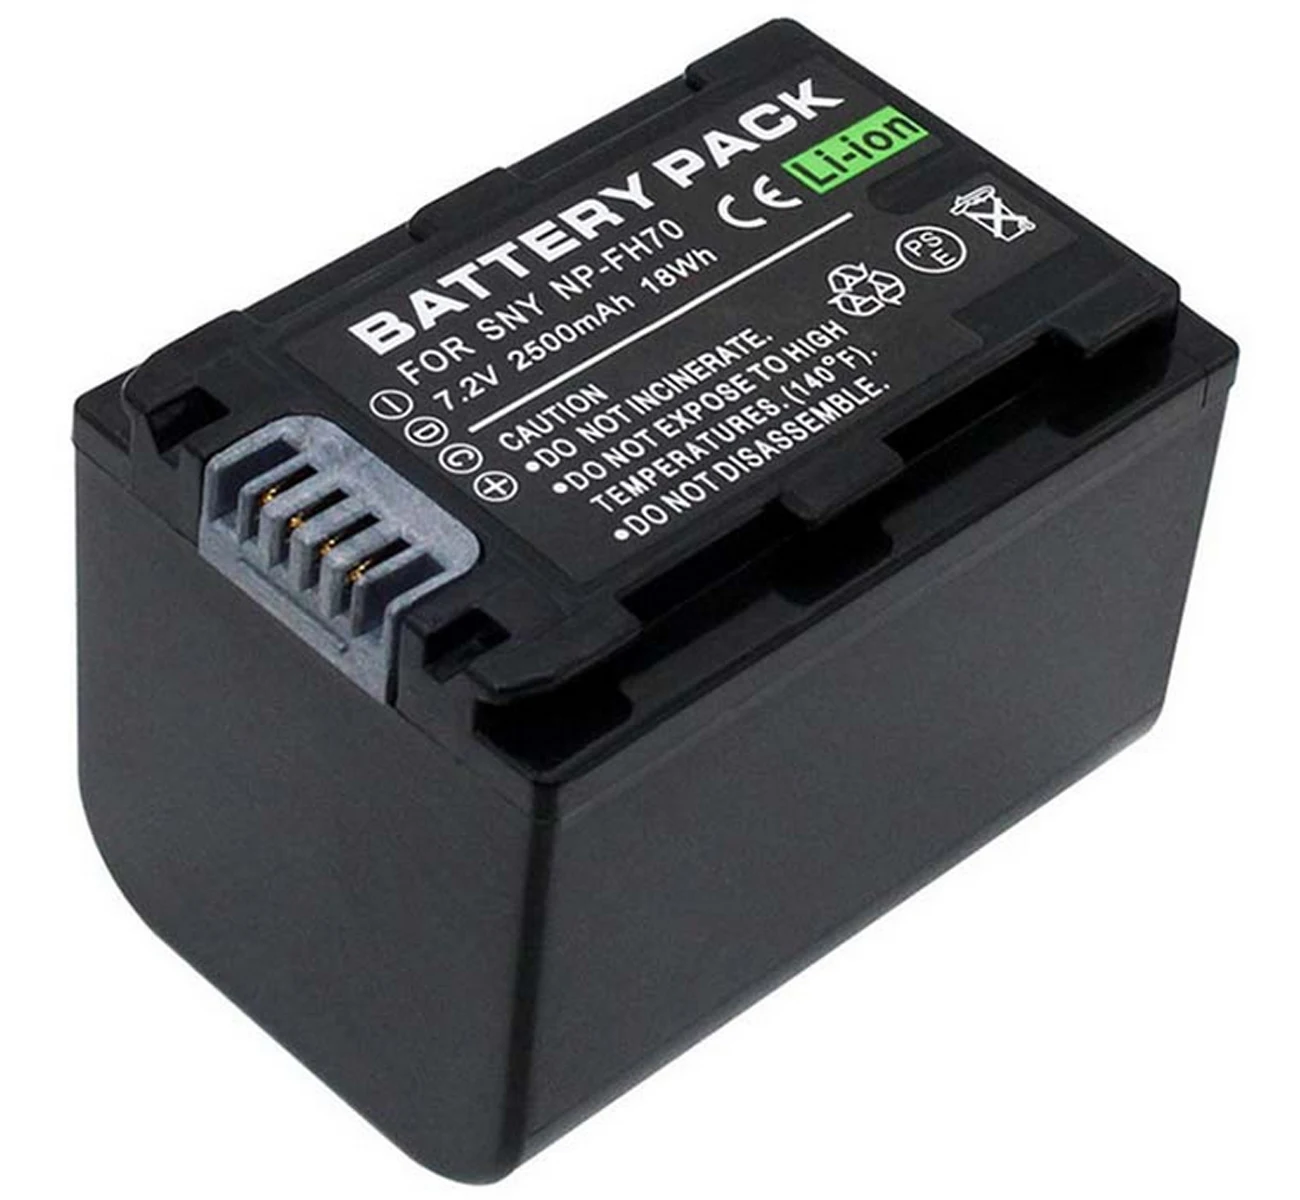 

Battery Pack for Sony DCR-DVD106E, DCR-DVD306E, DCR-DVD406E, DCR-DVD506E, DCR-DVD508E, DCR-DVD510E DVD Handycam Camcorder